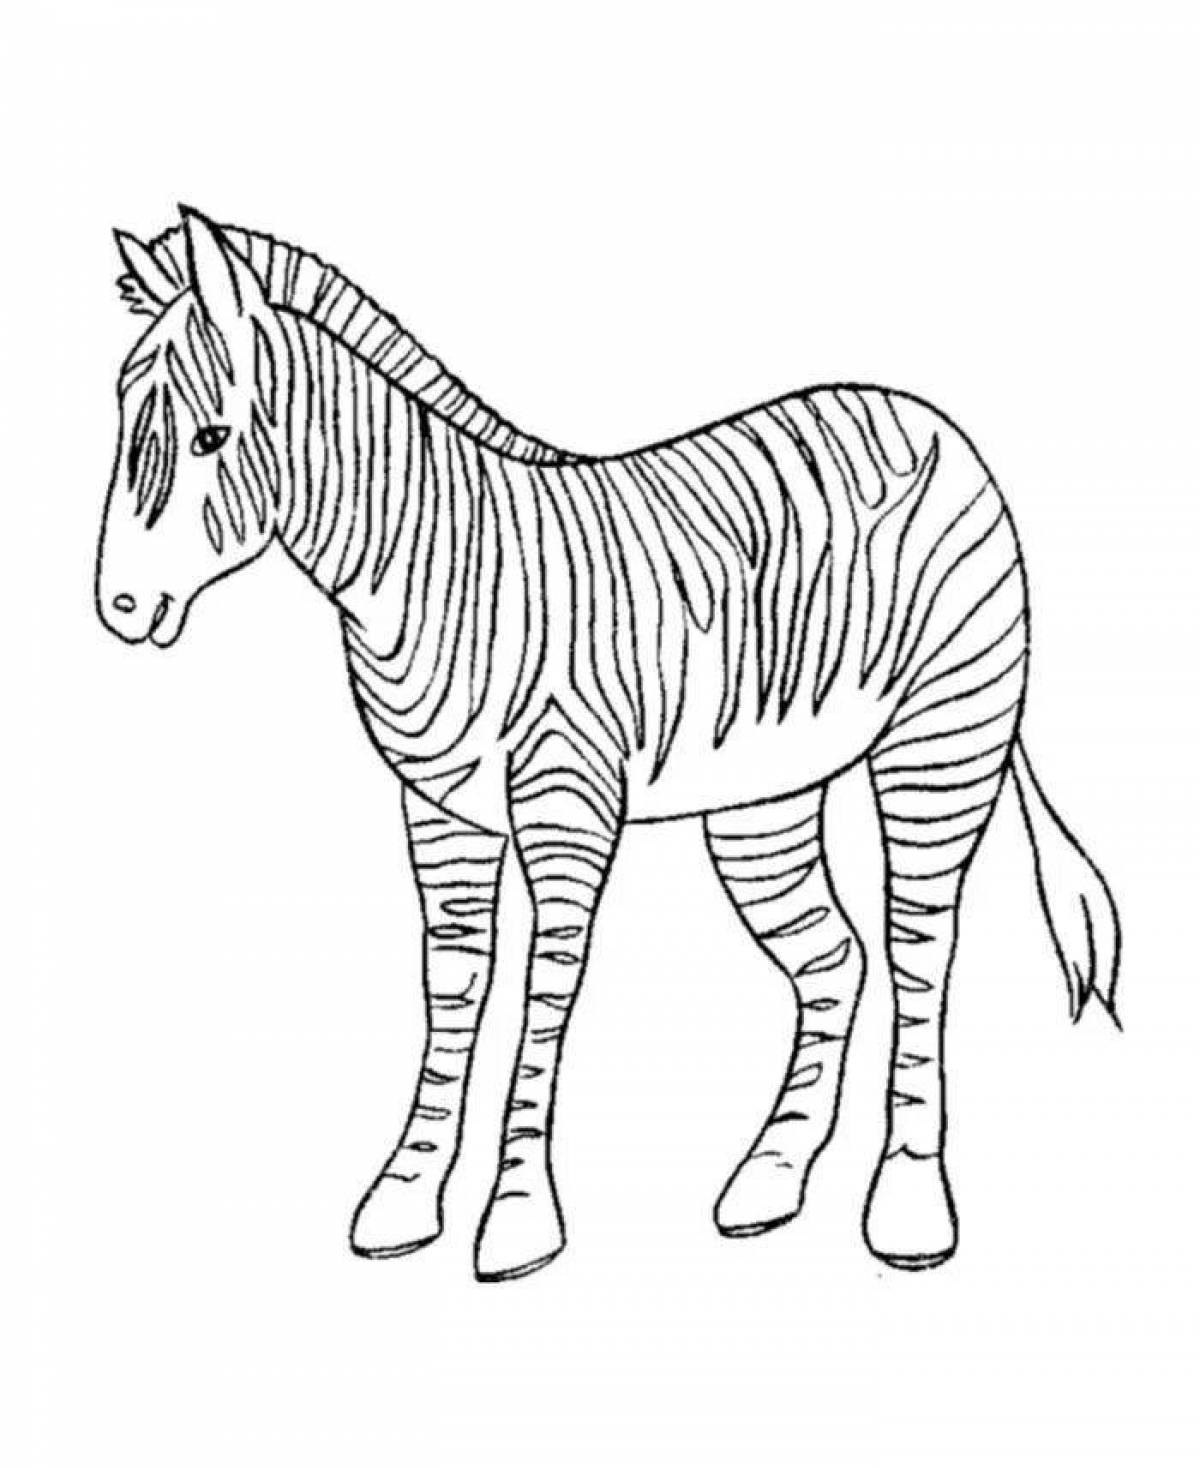 Shiny zebra without stripes